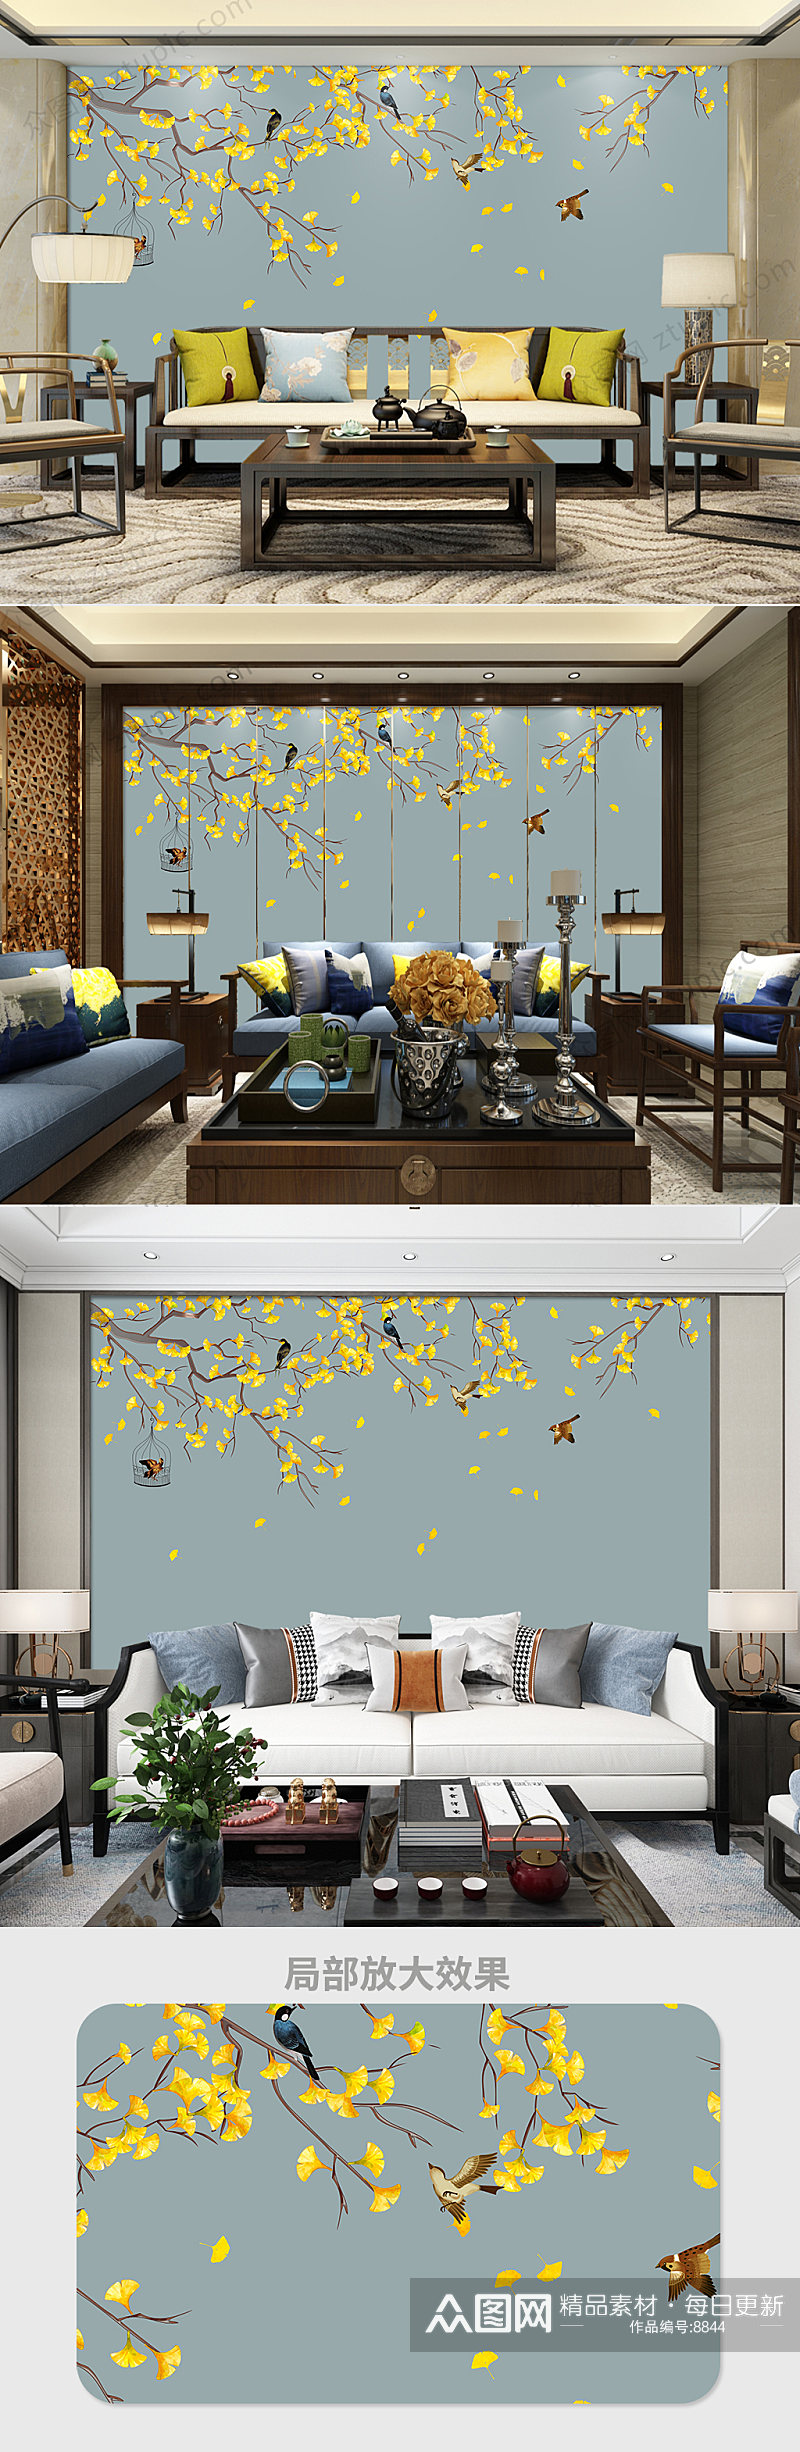 原创手绘银杏工笔花鸟新中式背景墙装饰画素材